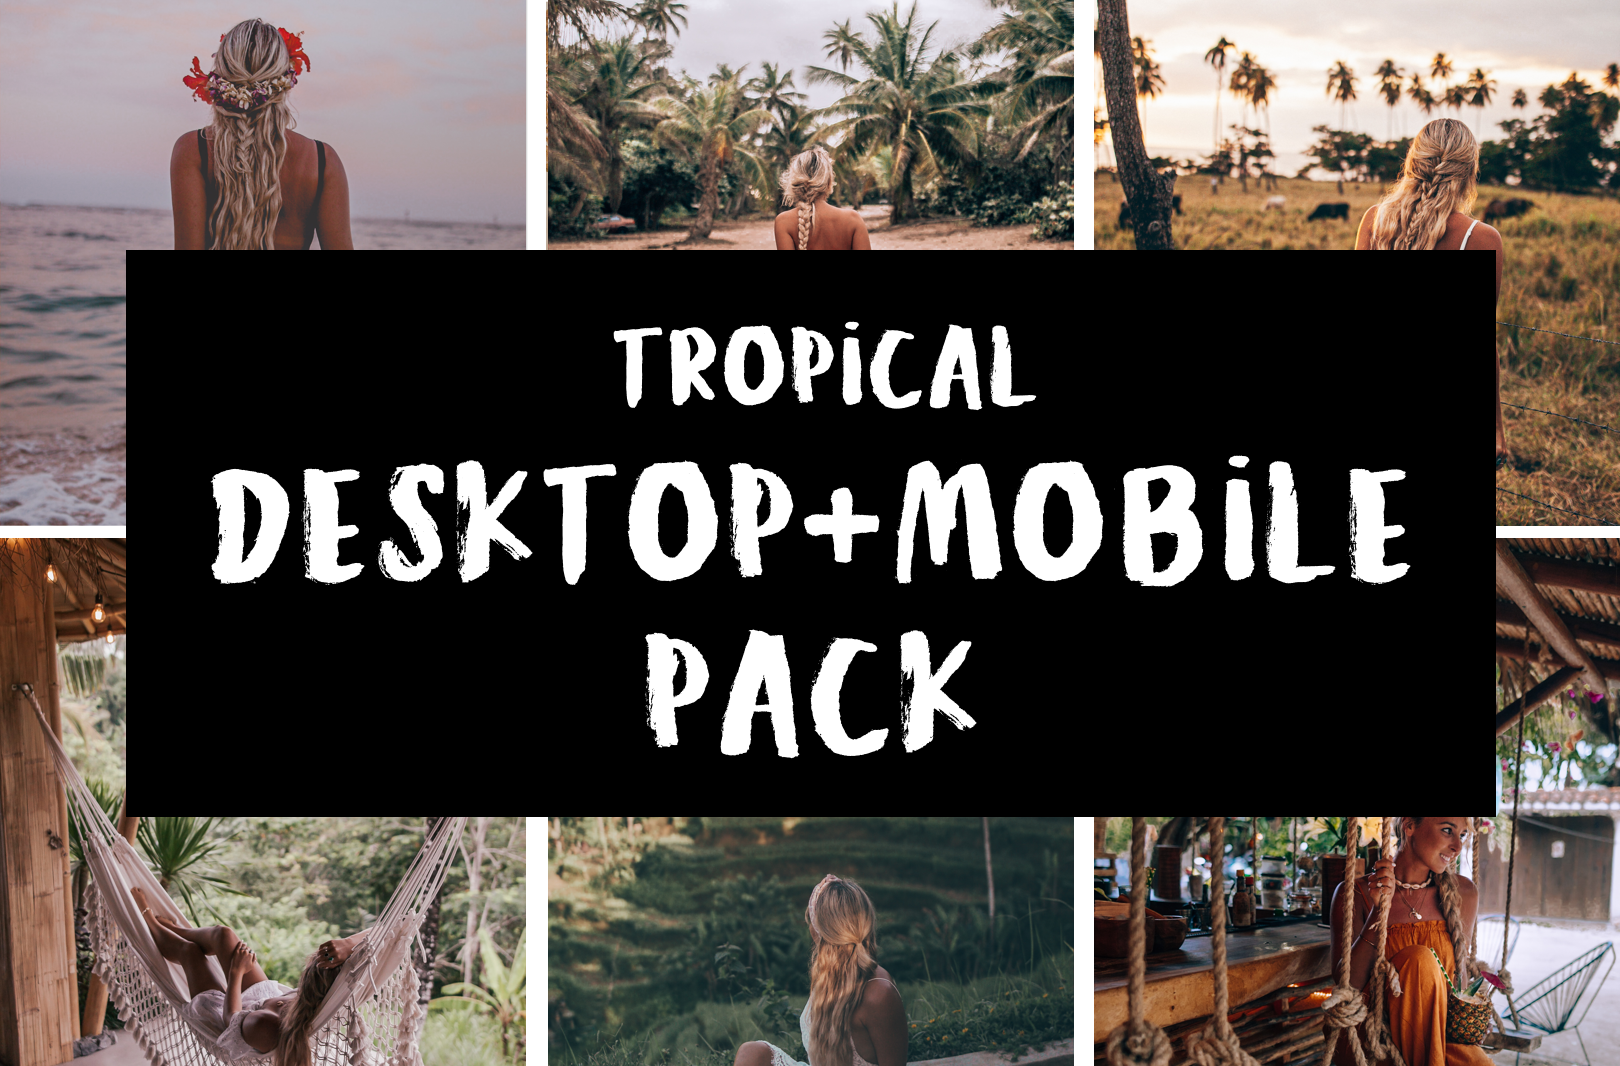 Tropical DESKTOP Pack: RAW photos